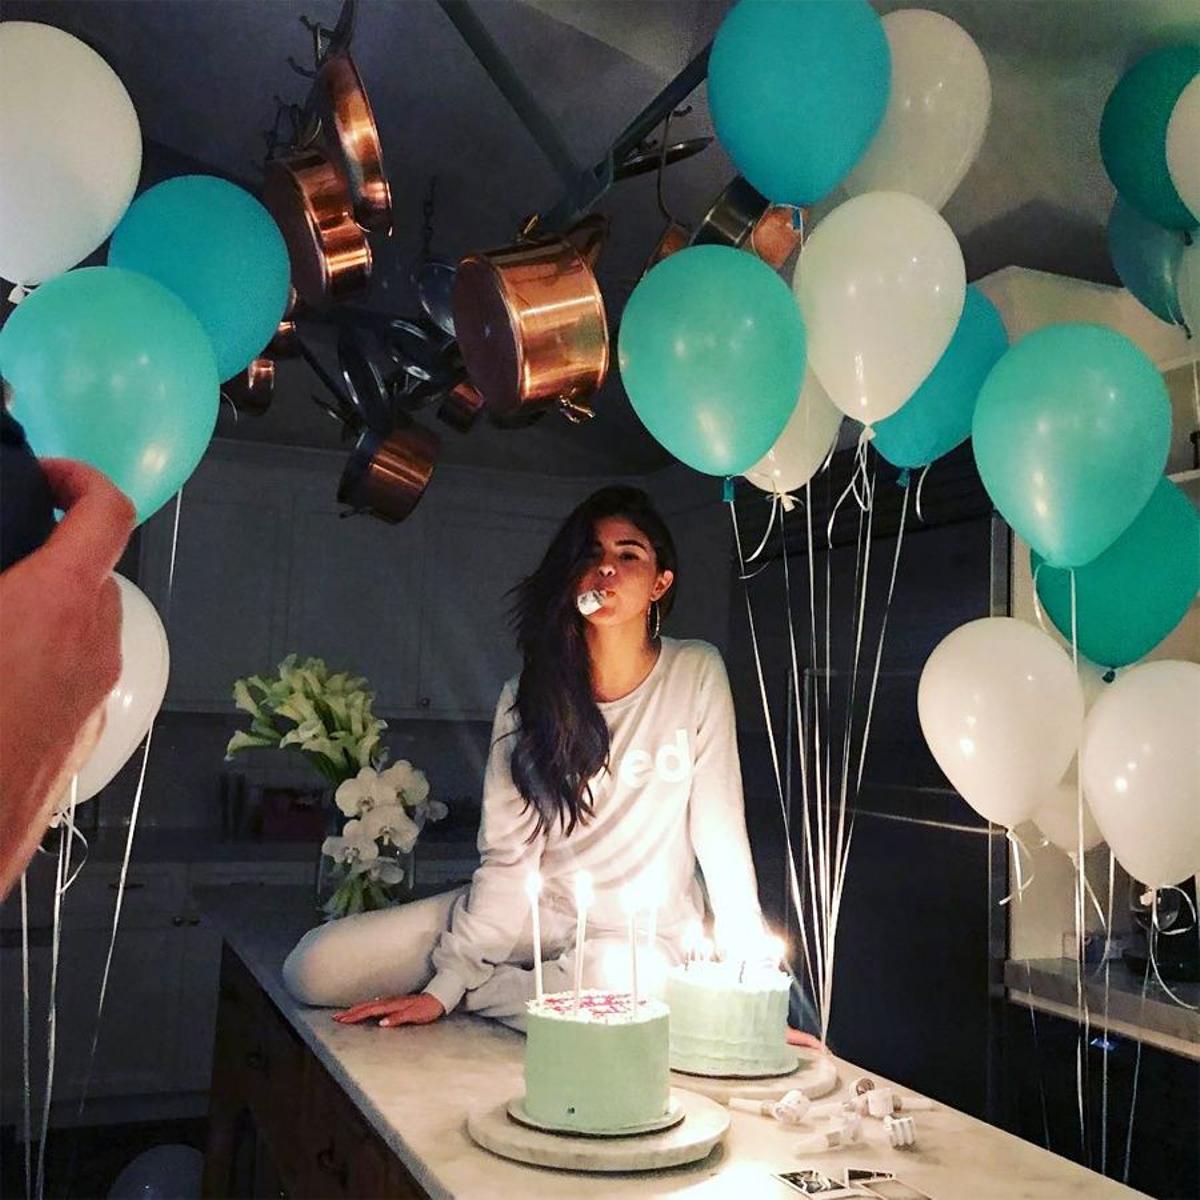 Las fotos con más 'likes' de Instagram: #10 el cumpleaños de Selena Gomez